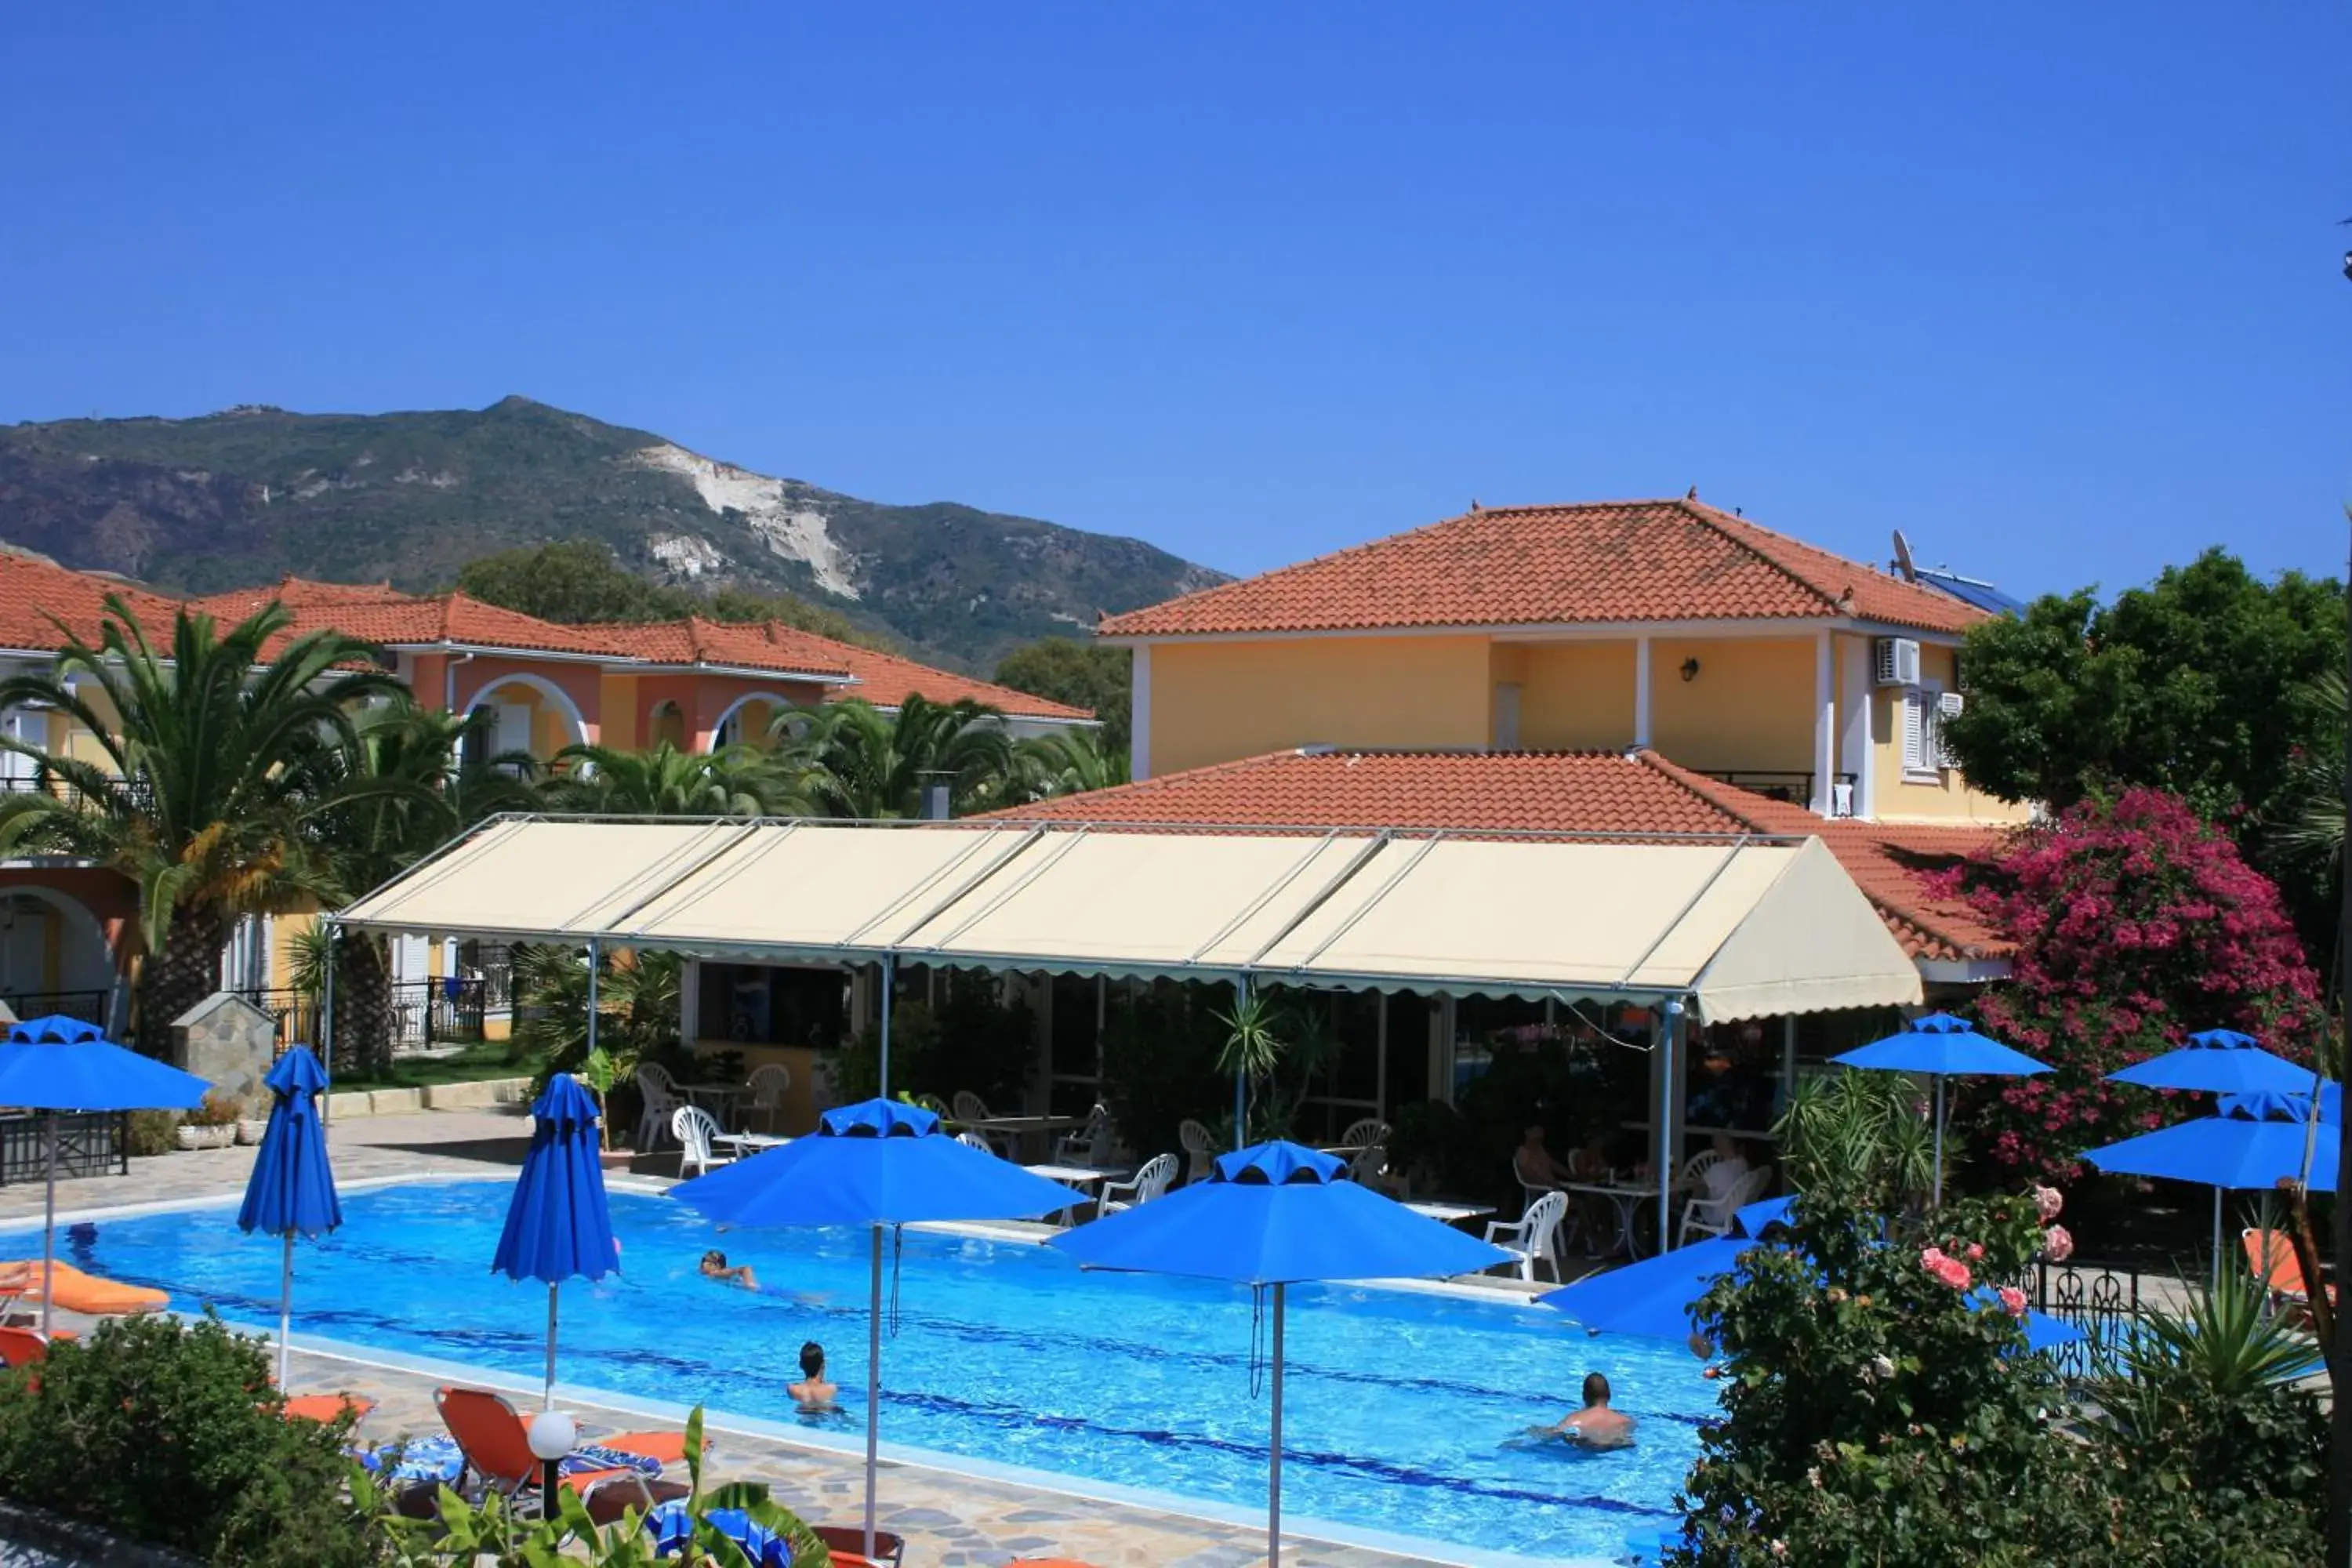 Day, Swimming Pool in Metaxa Hotel